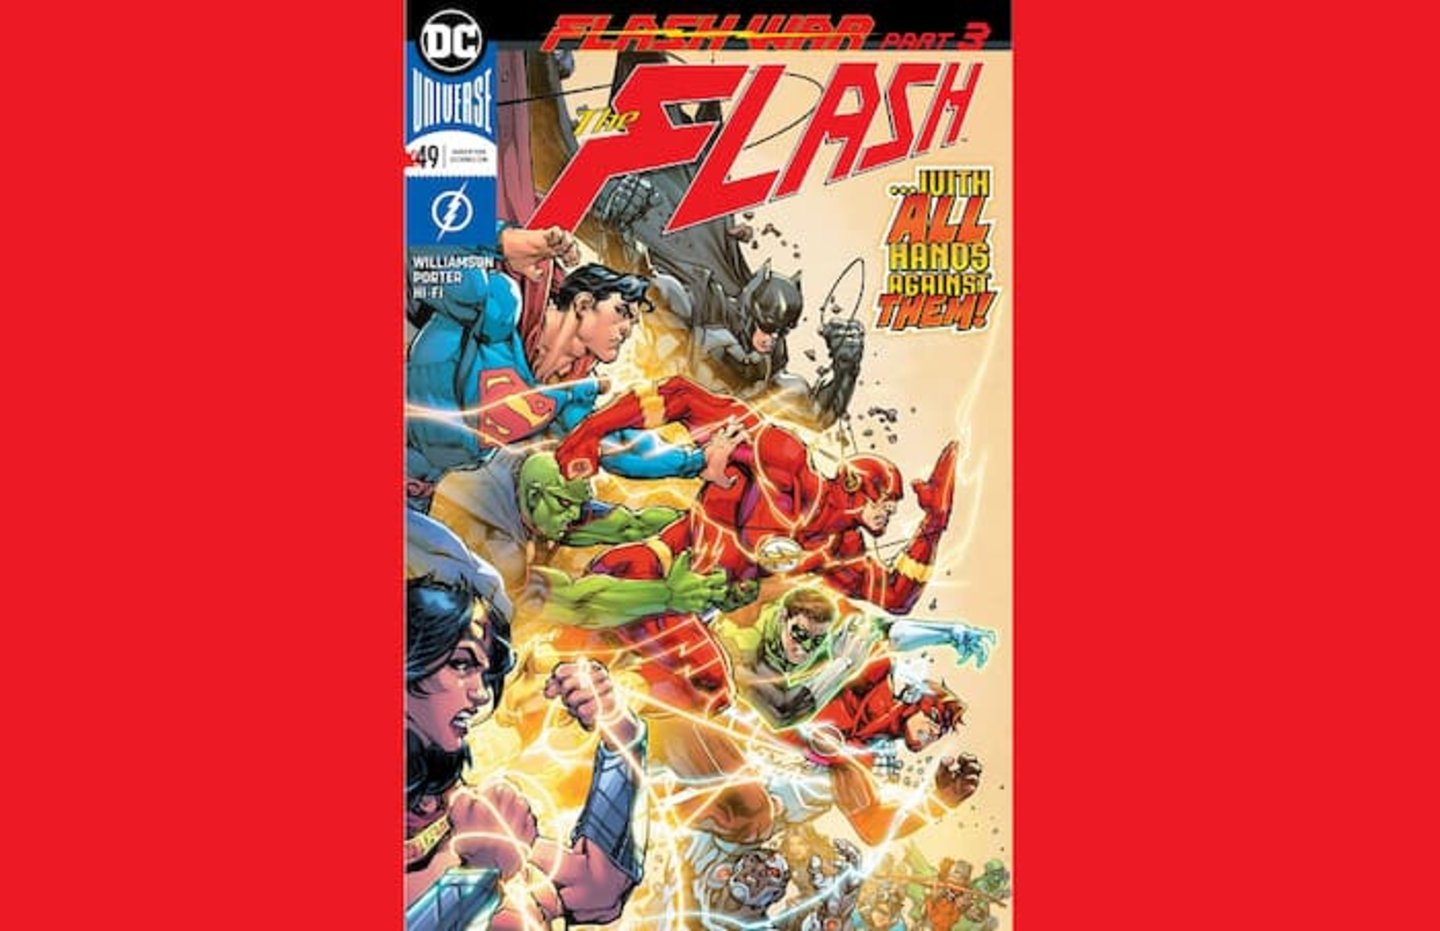 Portada del volumen #49 del cómic The Flash